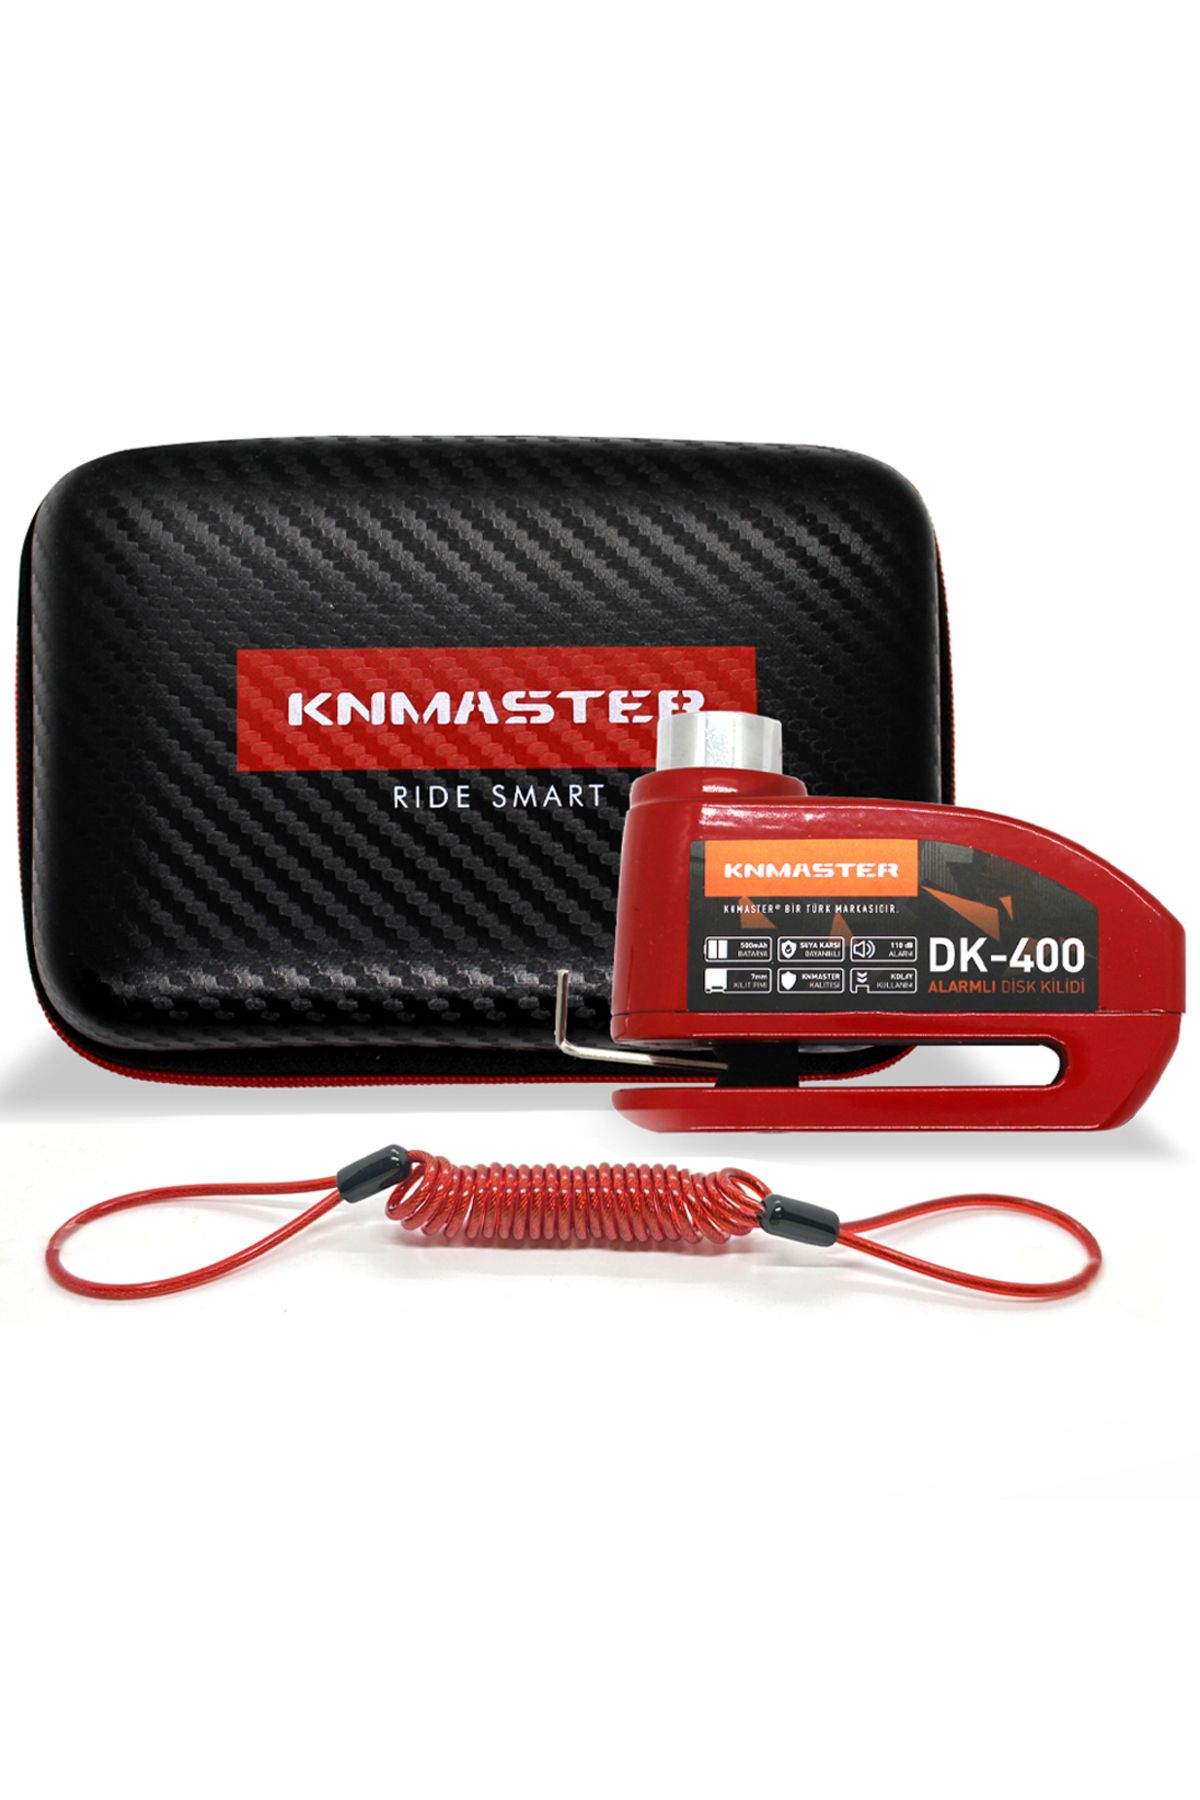 Knmaster Disk Kilidi Dk-400 7mm Alarmlı Hatılatma Kablosu Ve Çanta Hediyeli ( Kırmızı )